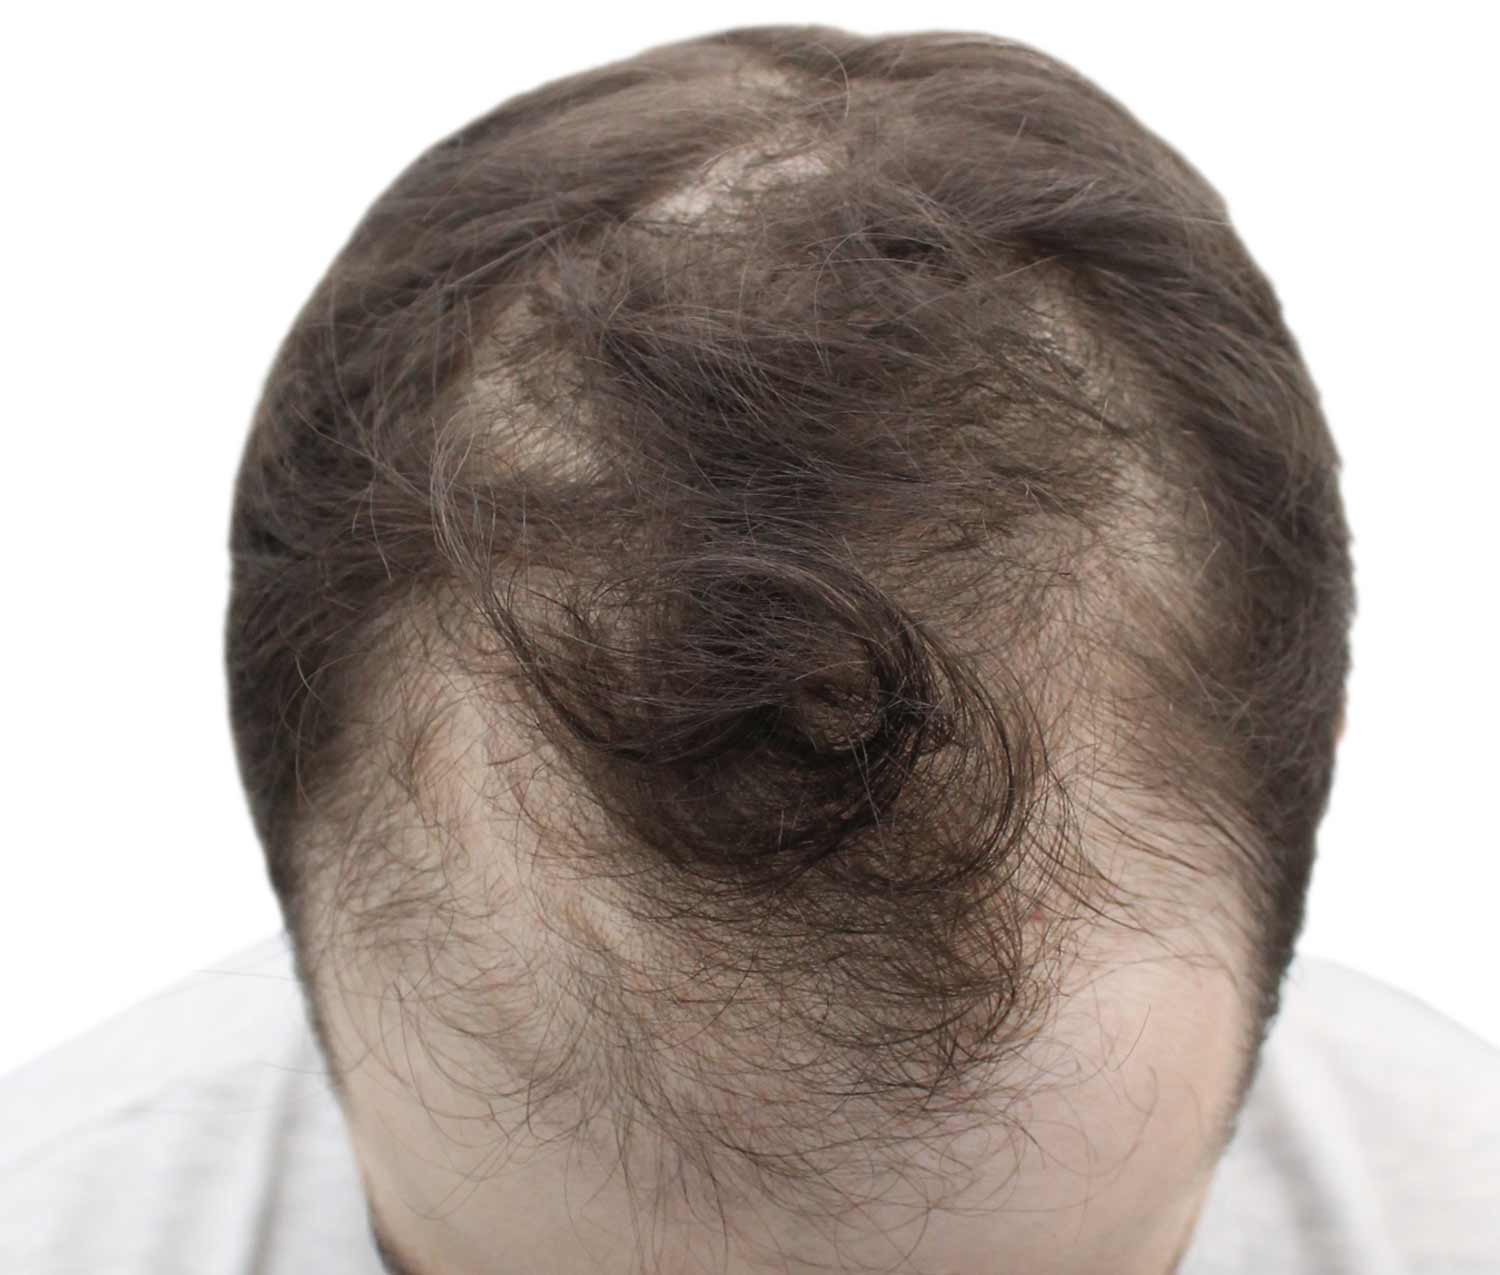 a close up of a man 's head with a bald spot on it .